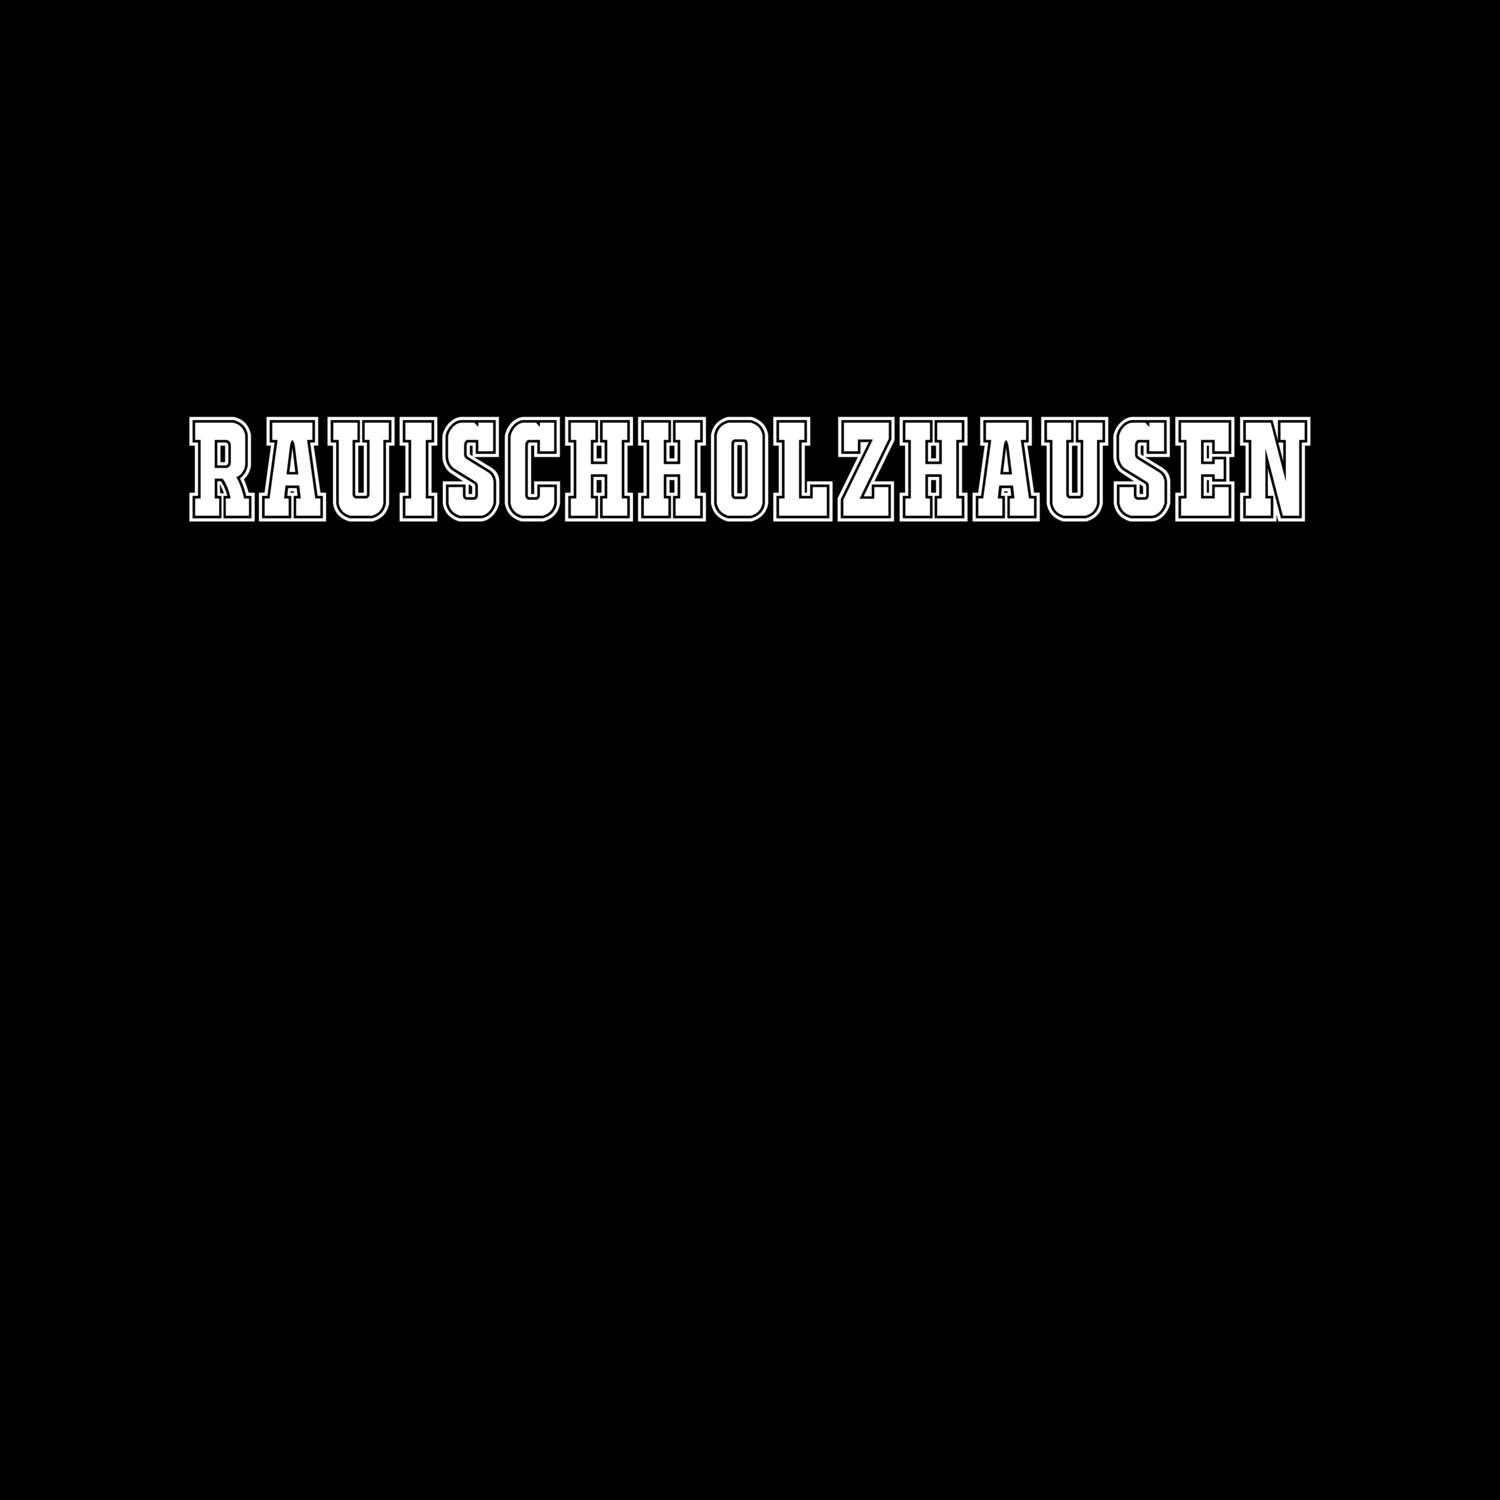 Rauischholzhausen T-Shirt »Classic«